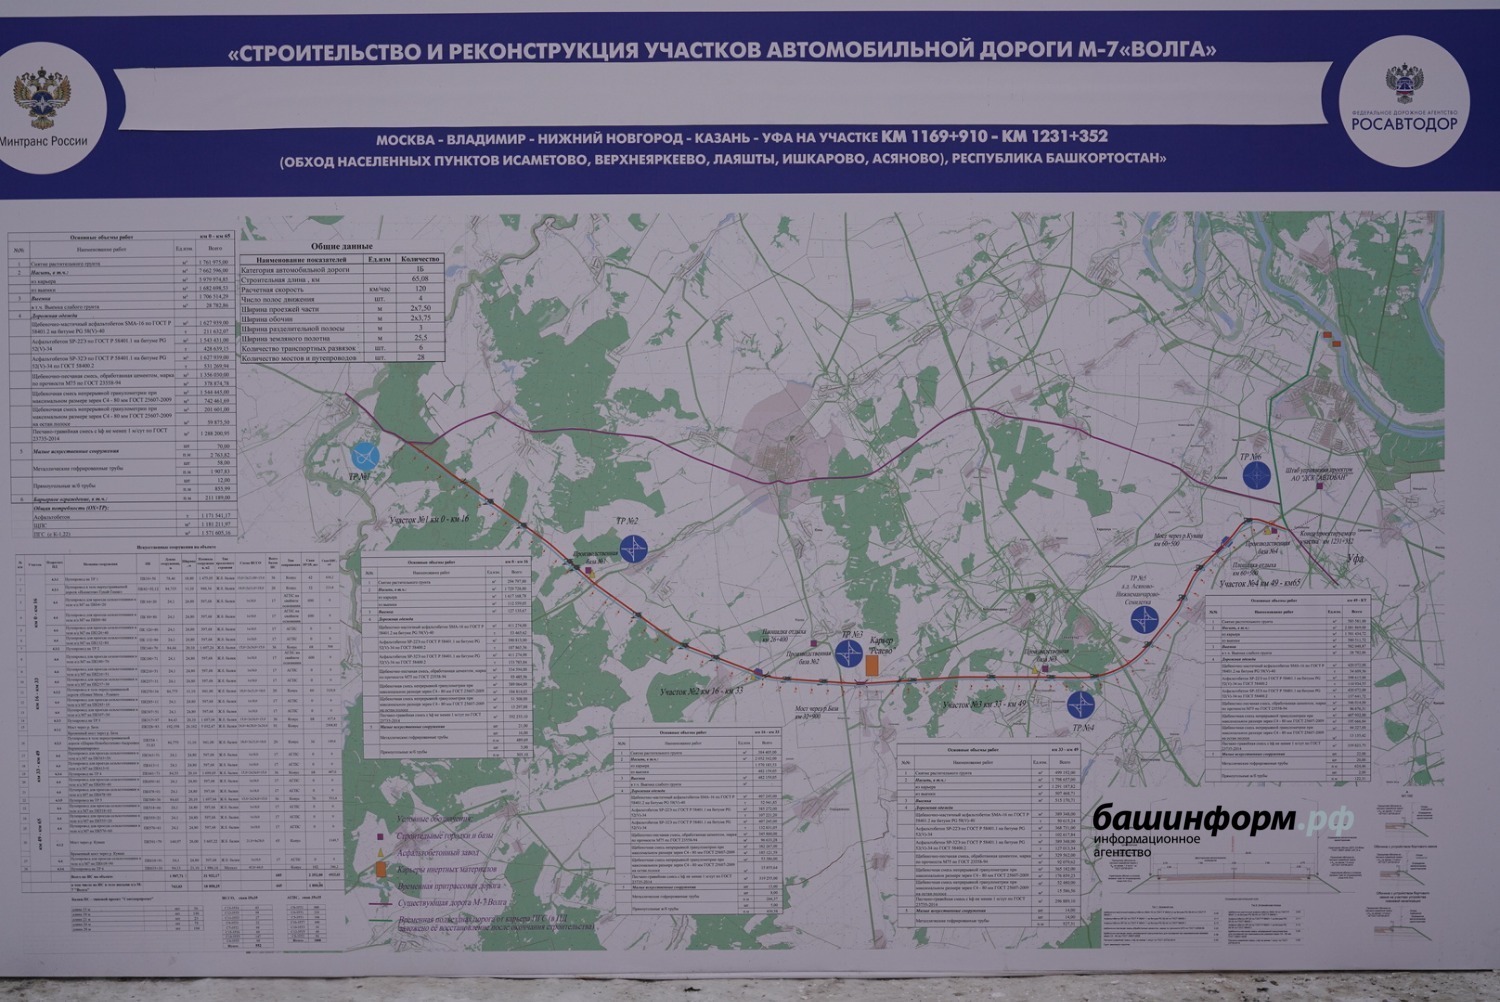 Участок федеральной трассы М-7 в Башкирии откроют в 2024 году